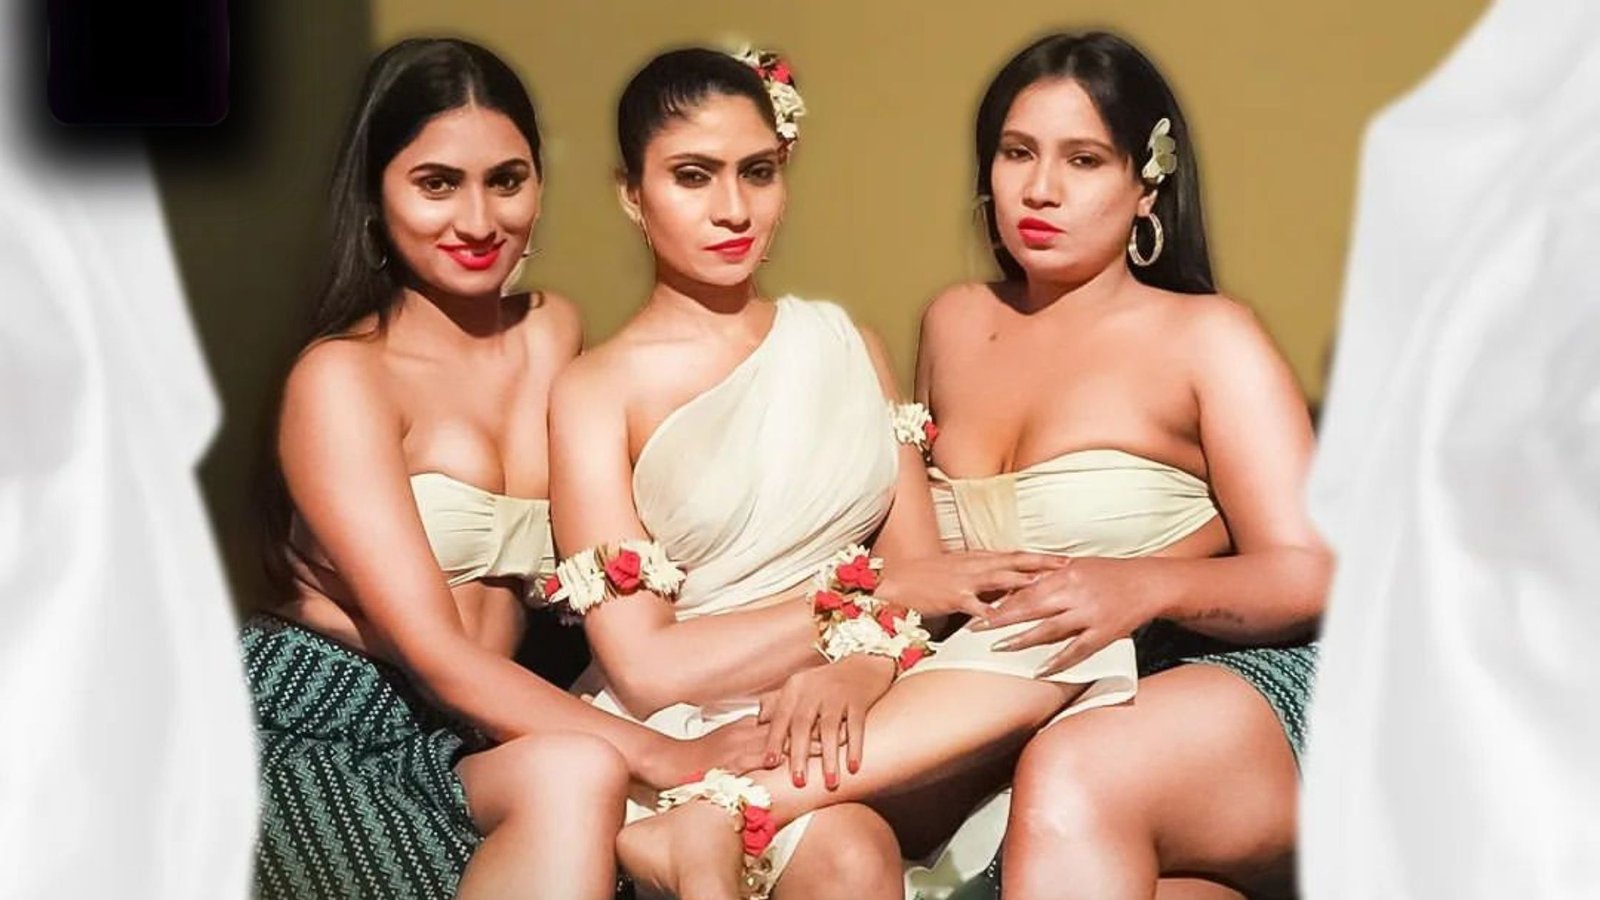 Mohini Massage Parlor Web Series Cast, (Battameez App) Actress Name, Watch Online